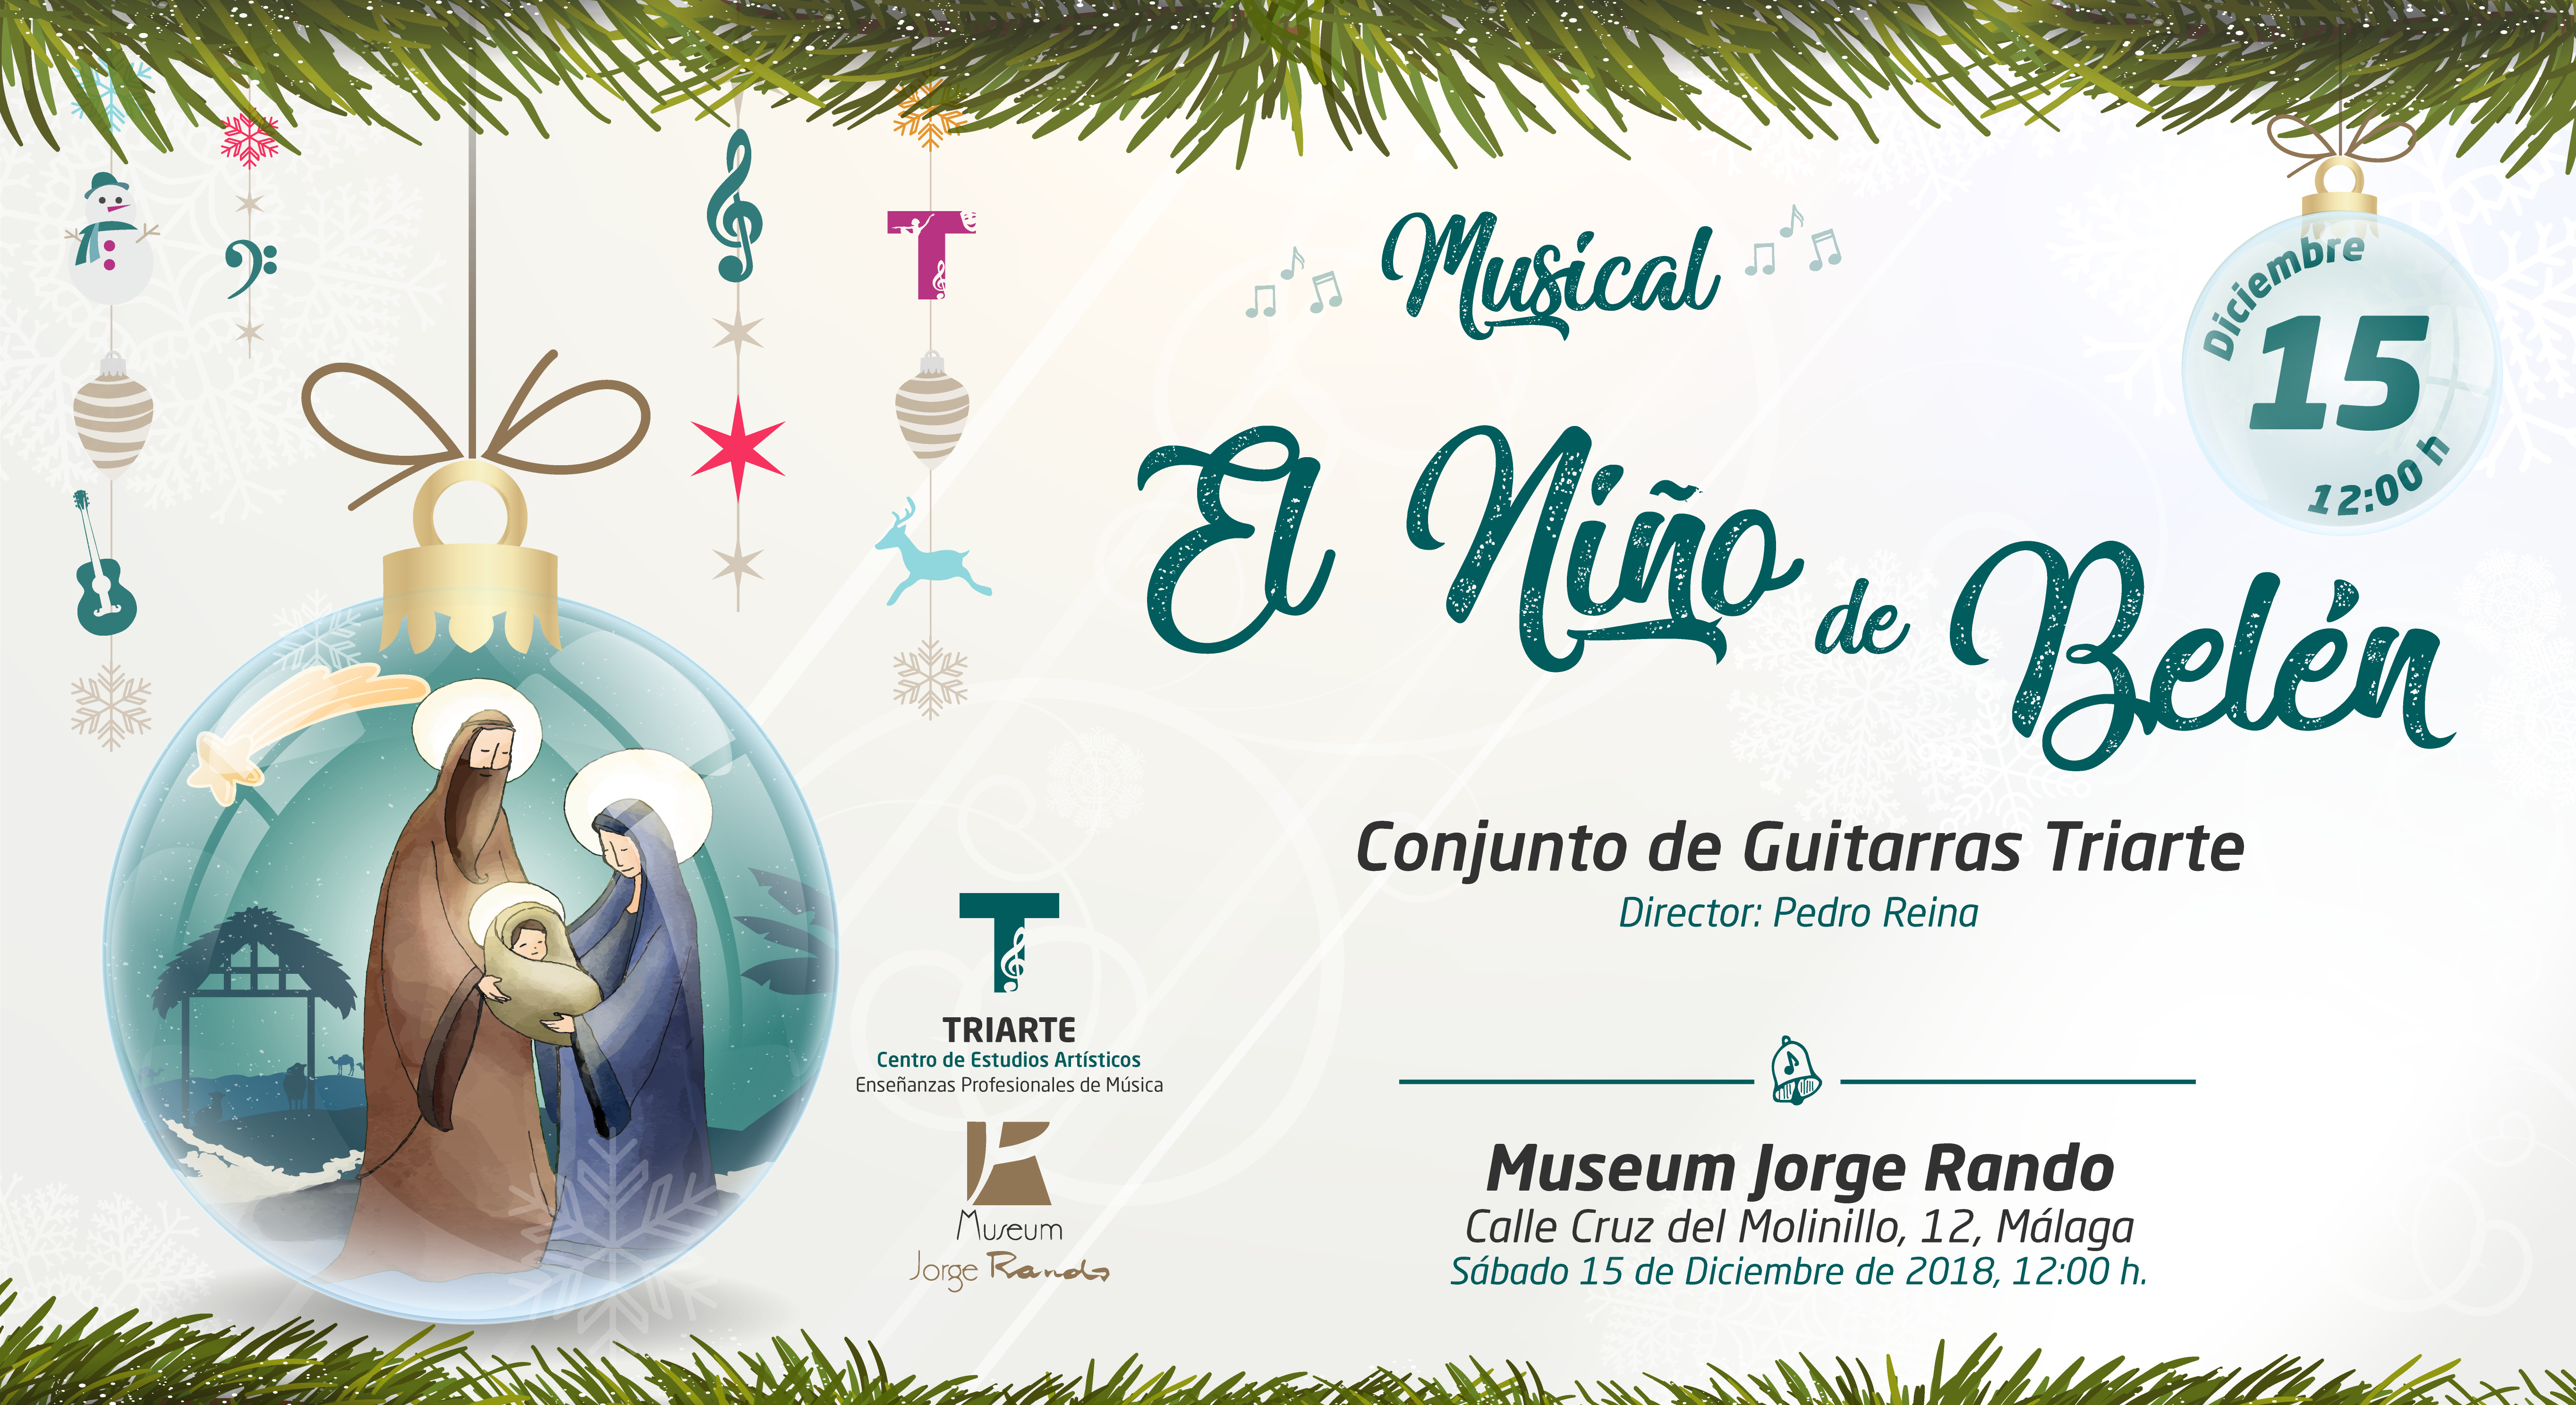 Conjunto de Guitarras Triarte,. Concierto en Museum Jorge Rando de Málaga. Musical "El niño de Belén. Málaga, Navidad 2018